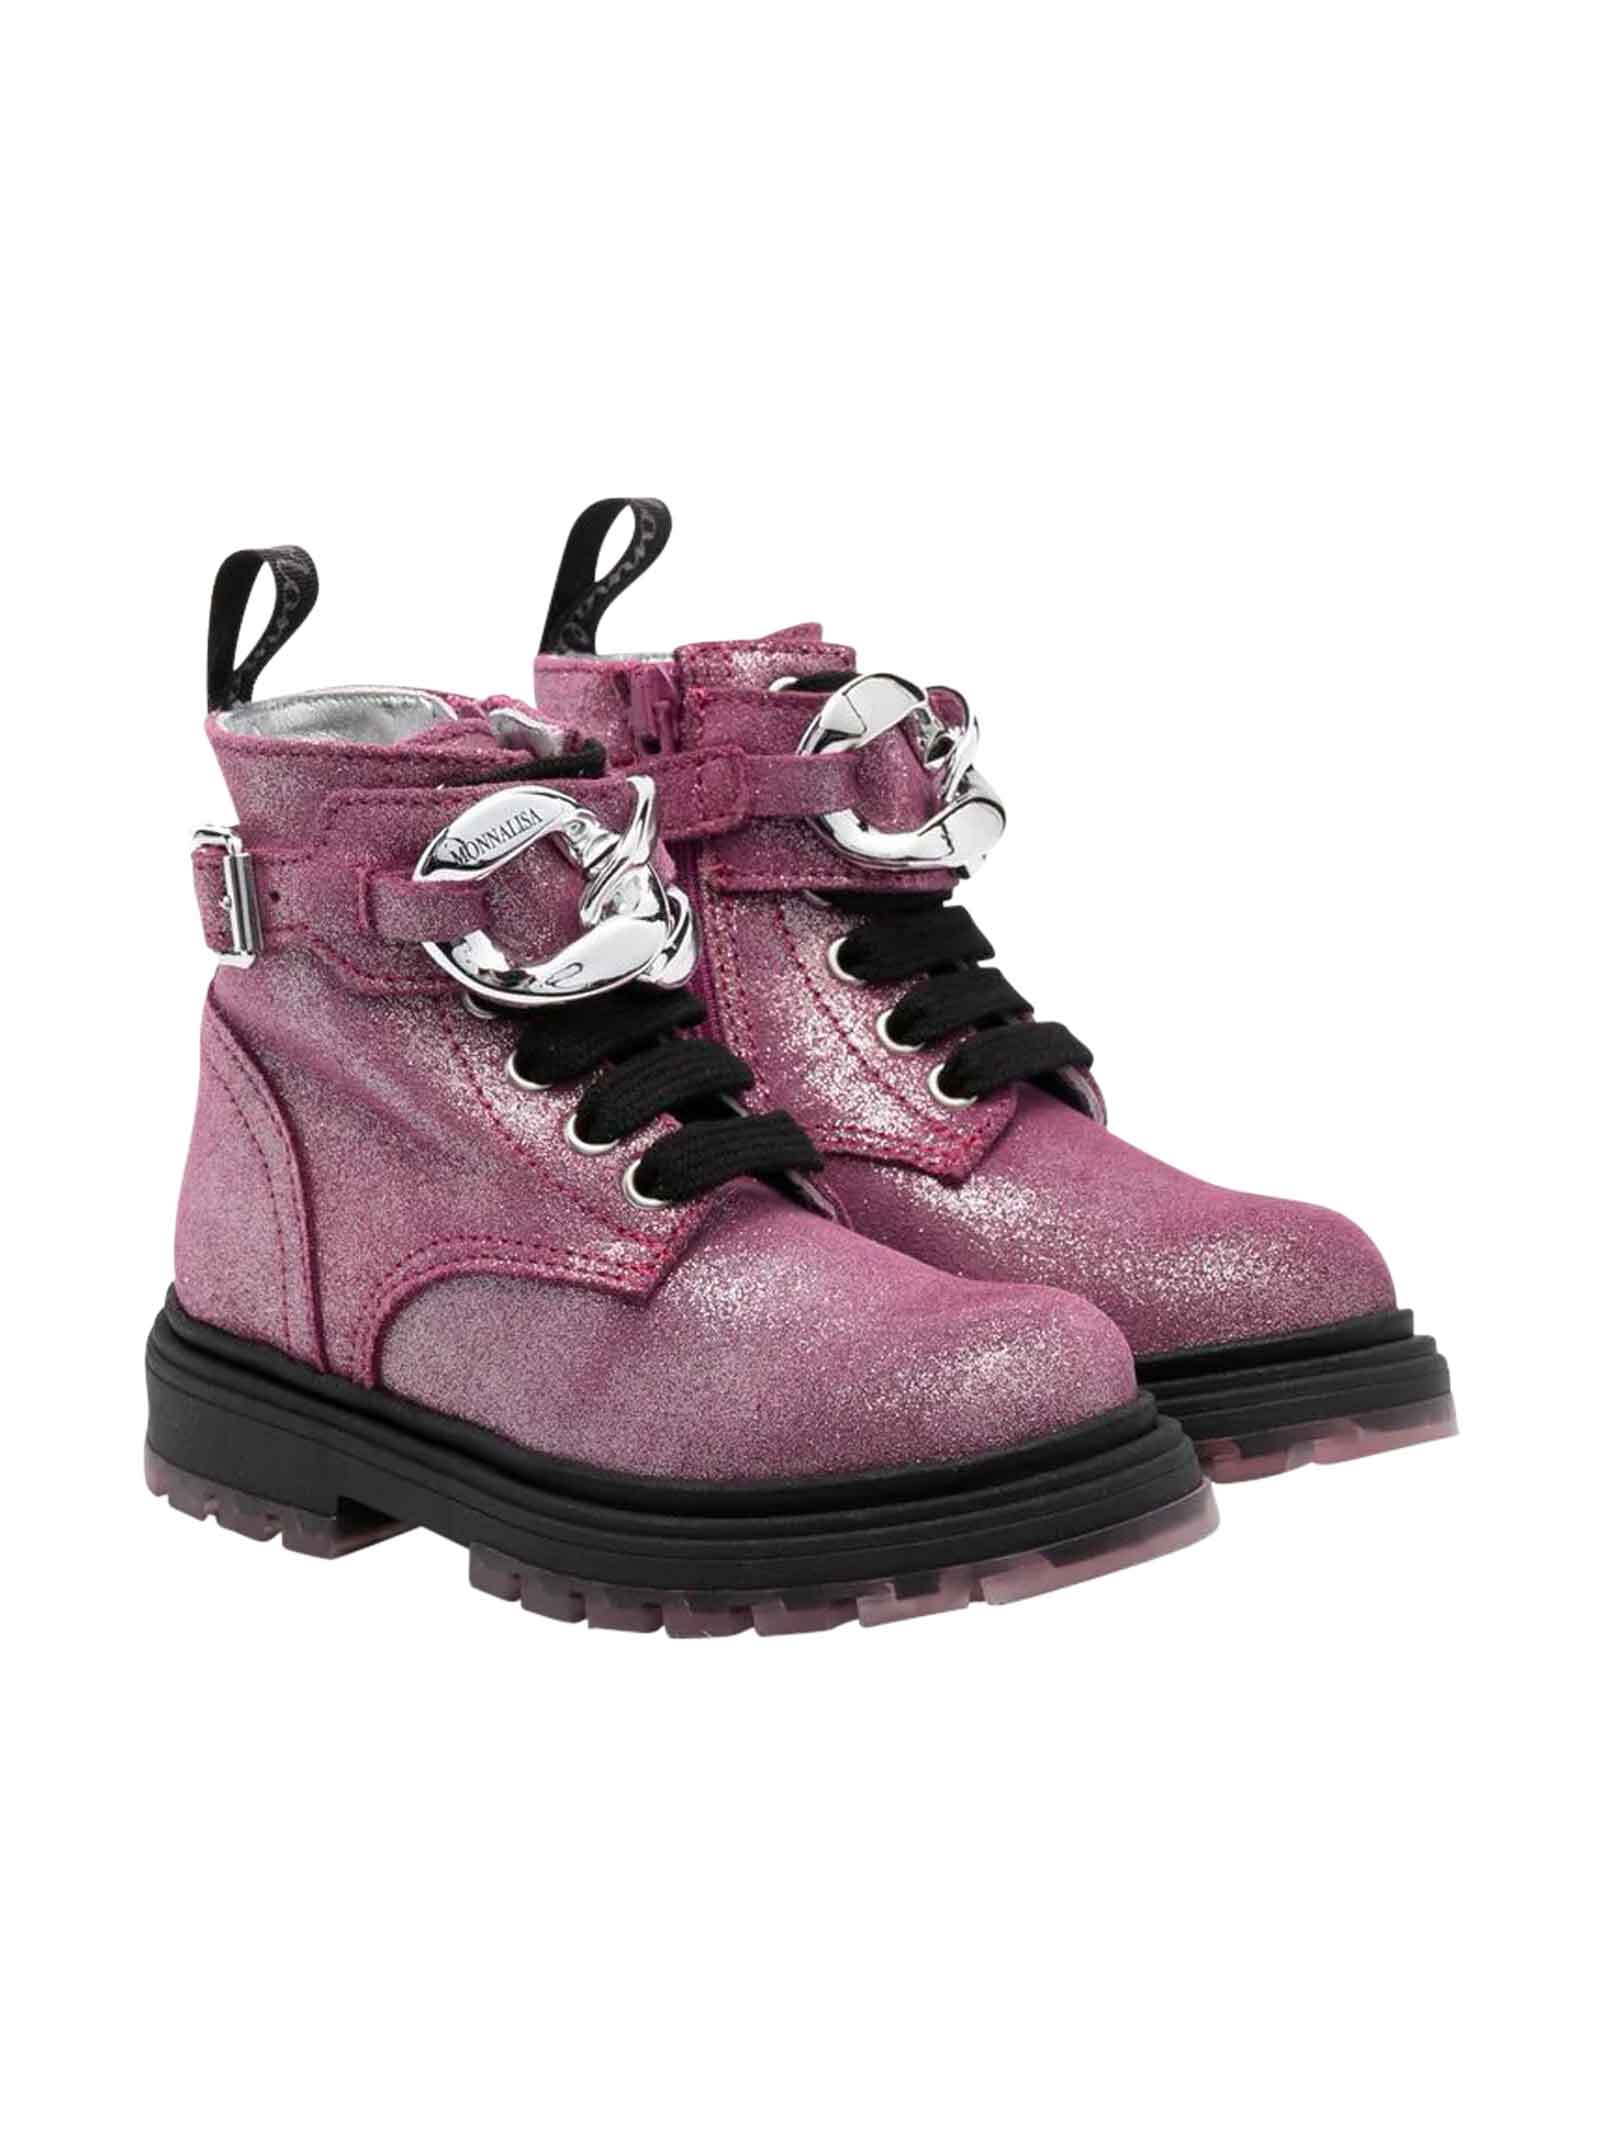 Purple Boots Teen Girl Monnalisa.